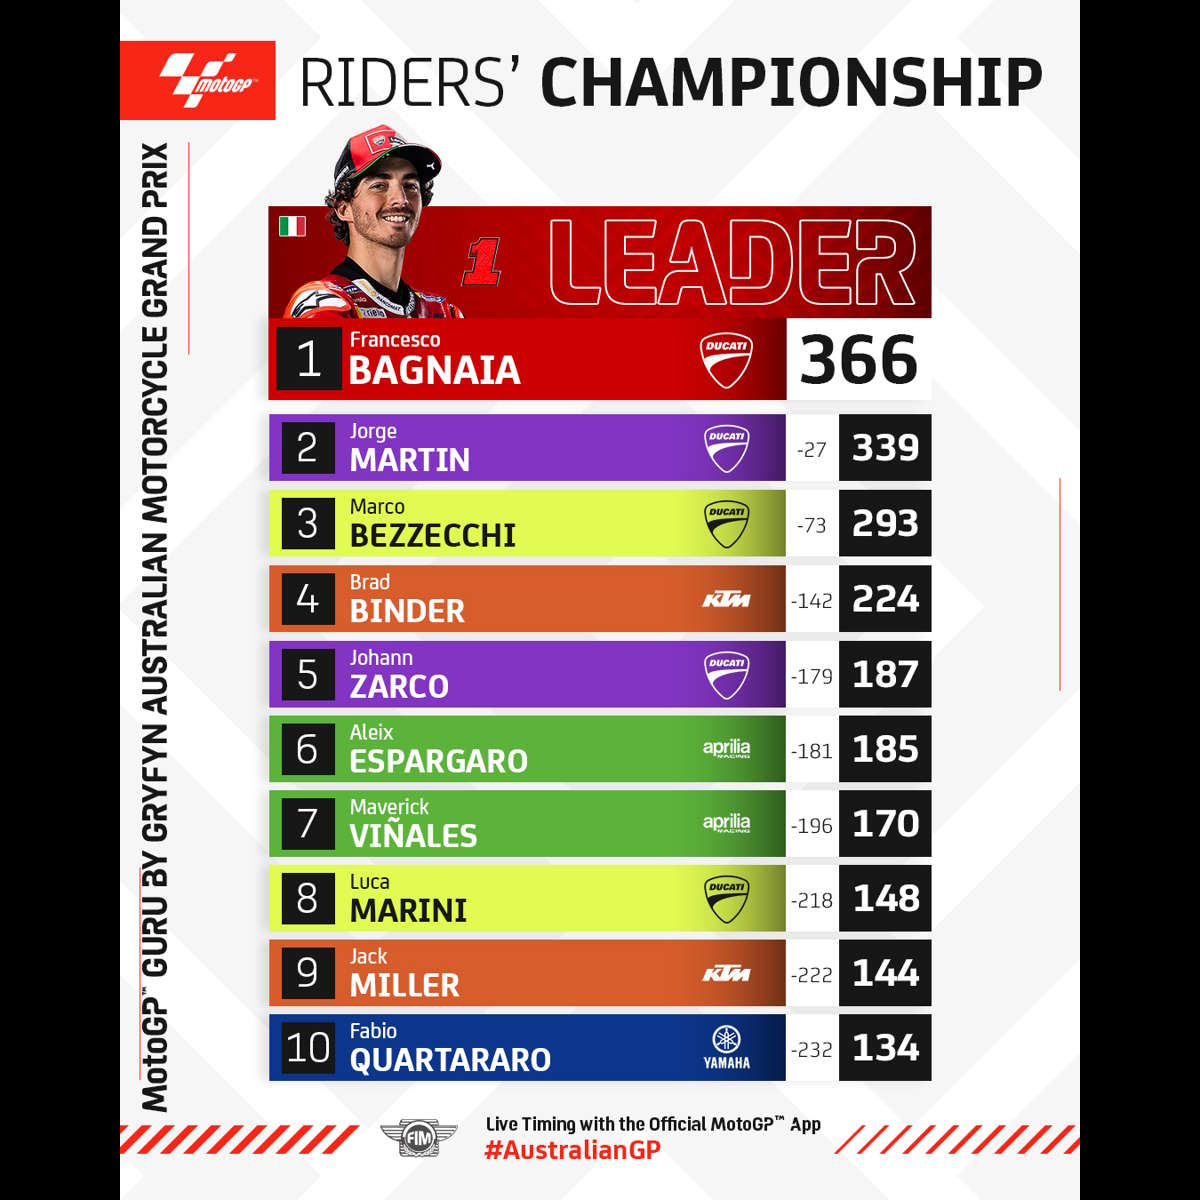 MotoGP: in Australia Martin crolla all'ultimo giro e finisce quinto, Bagnaia è secondo e rafforza la prima posizione nella classifica del mondiale piloti